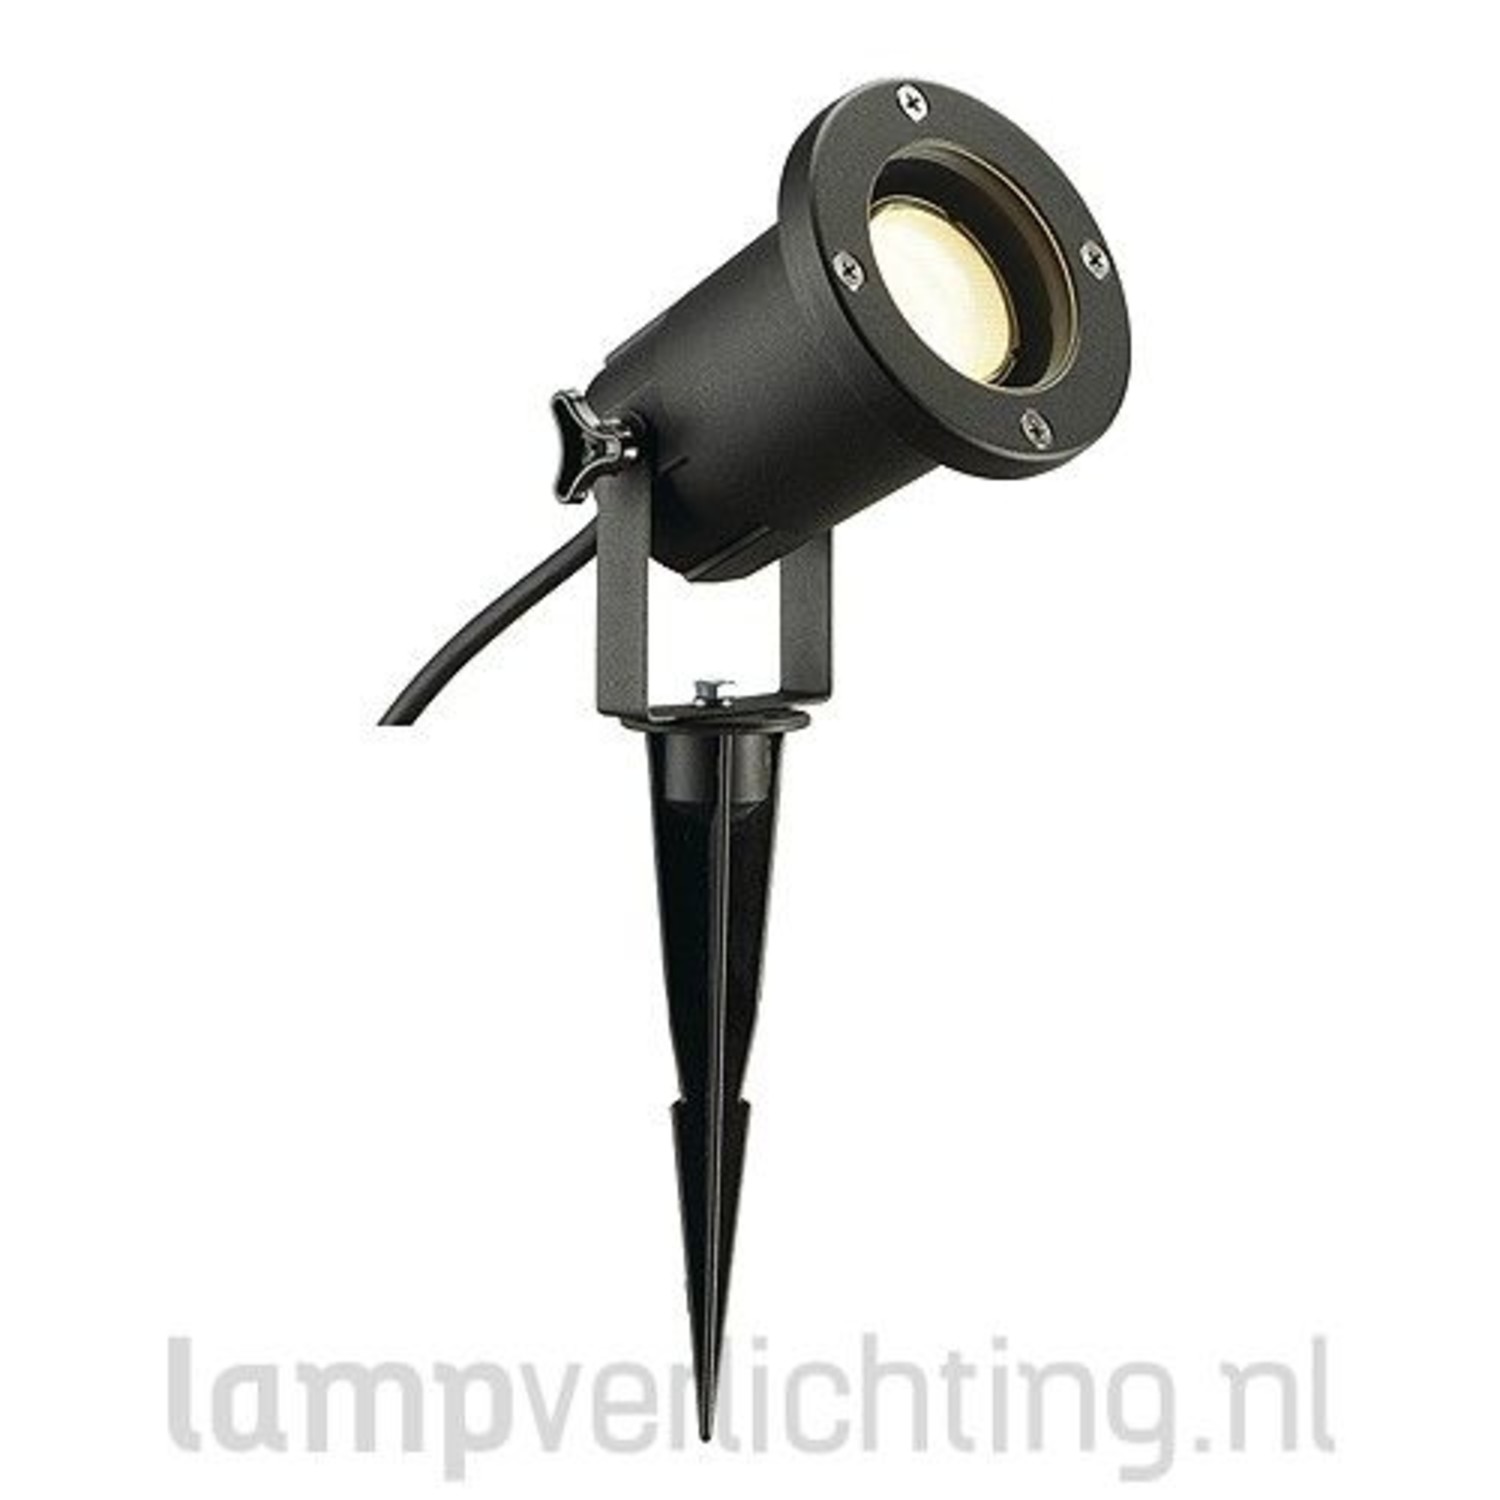 meester In werkelijkheid Knuppel Tuinspot Spies GU10 230V - Zwart - Met spies, kabel en stekker - Tip -  LampVerlichting.nl